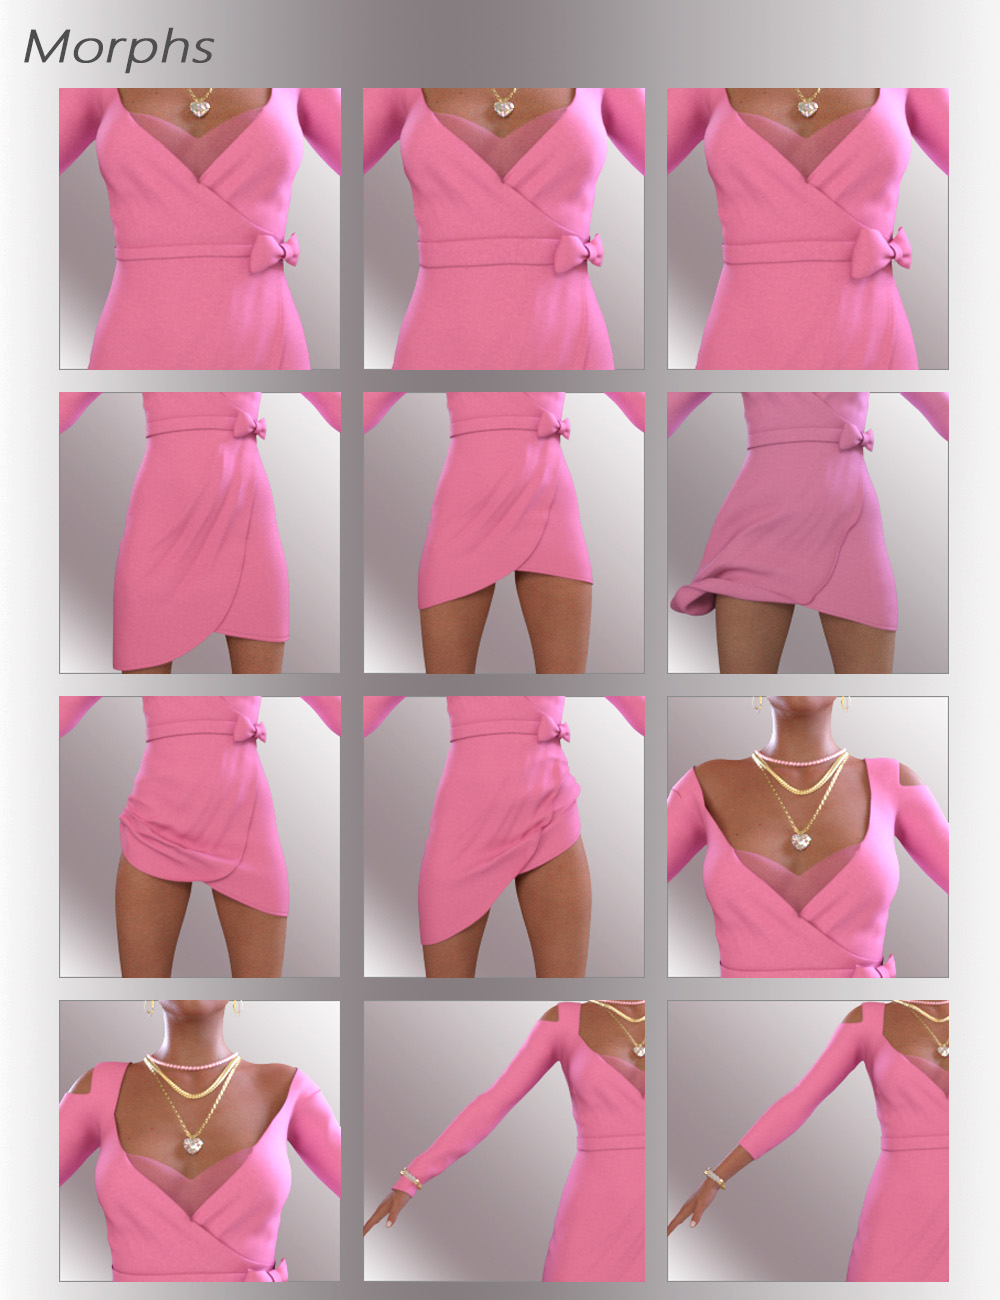 dForce Zoe Outfit for Genesis 8.1 Females by: OnnelArryn, 3D Models by Daz 3D